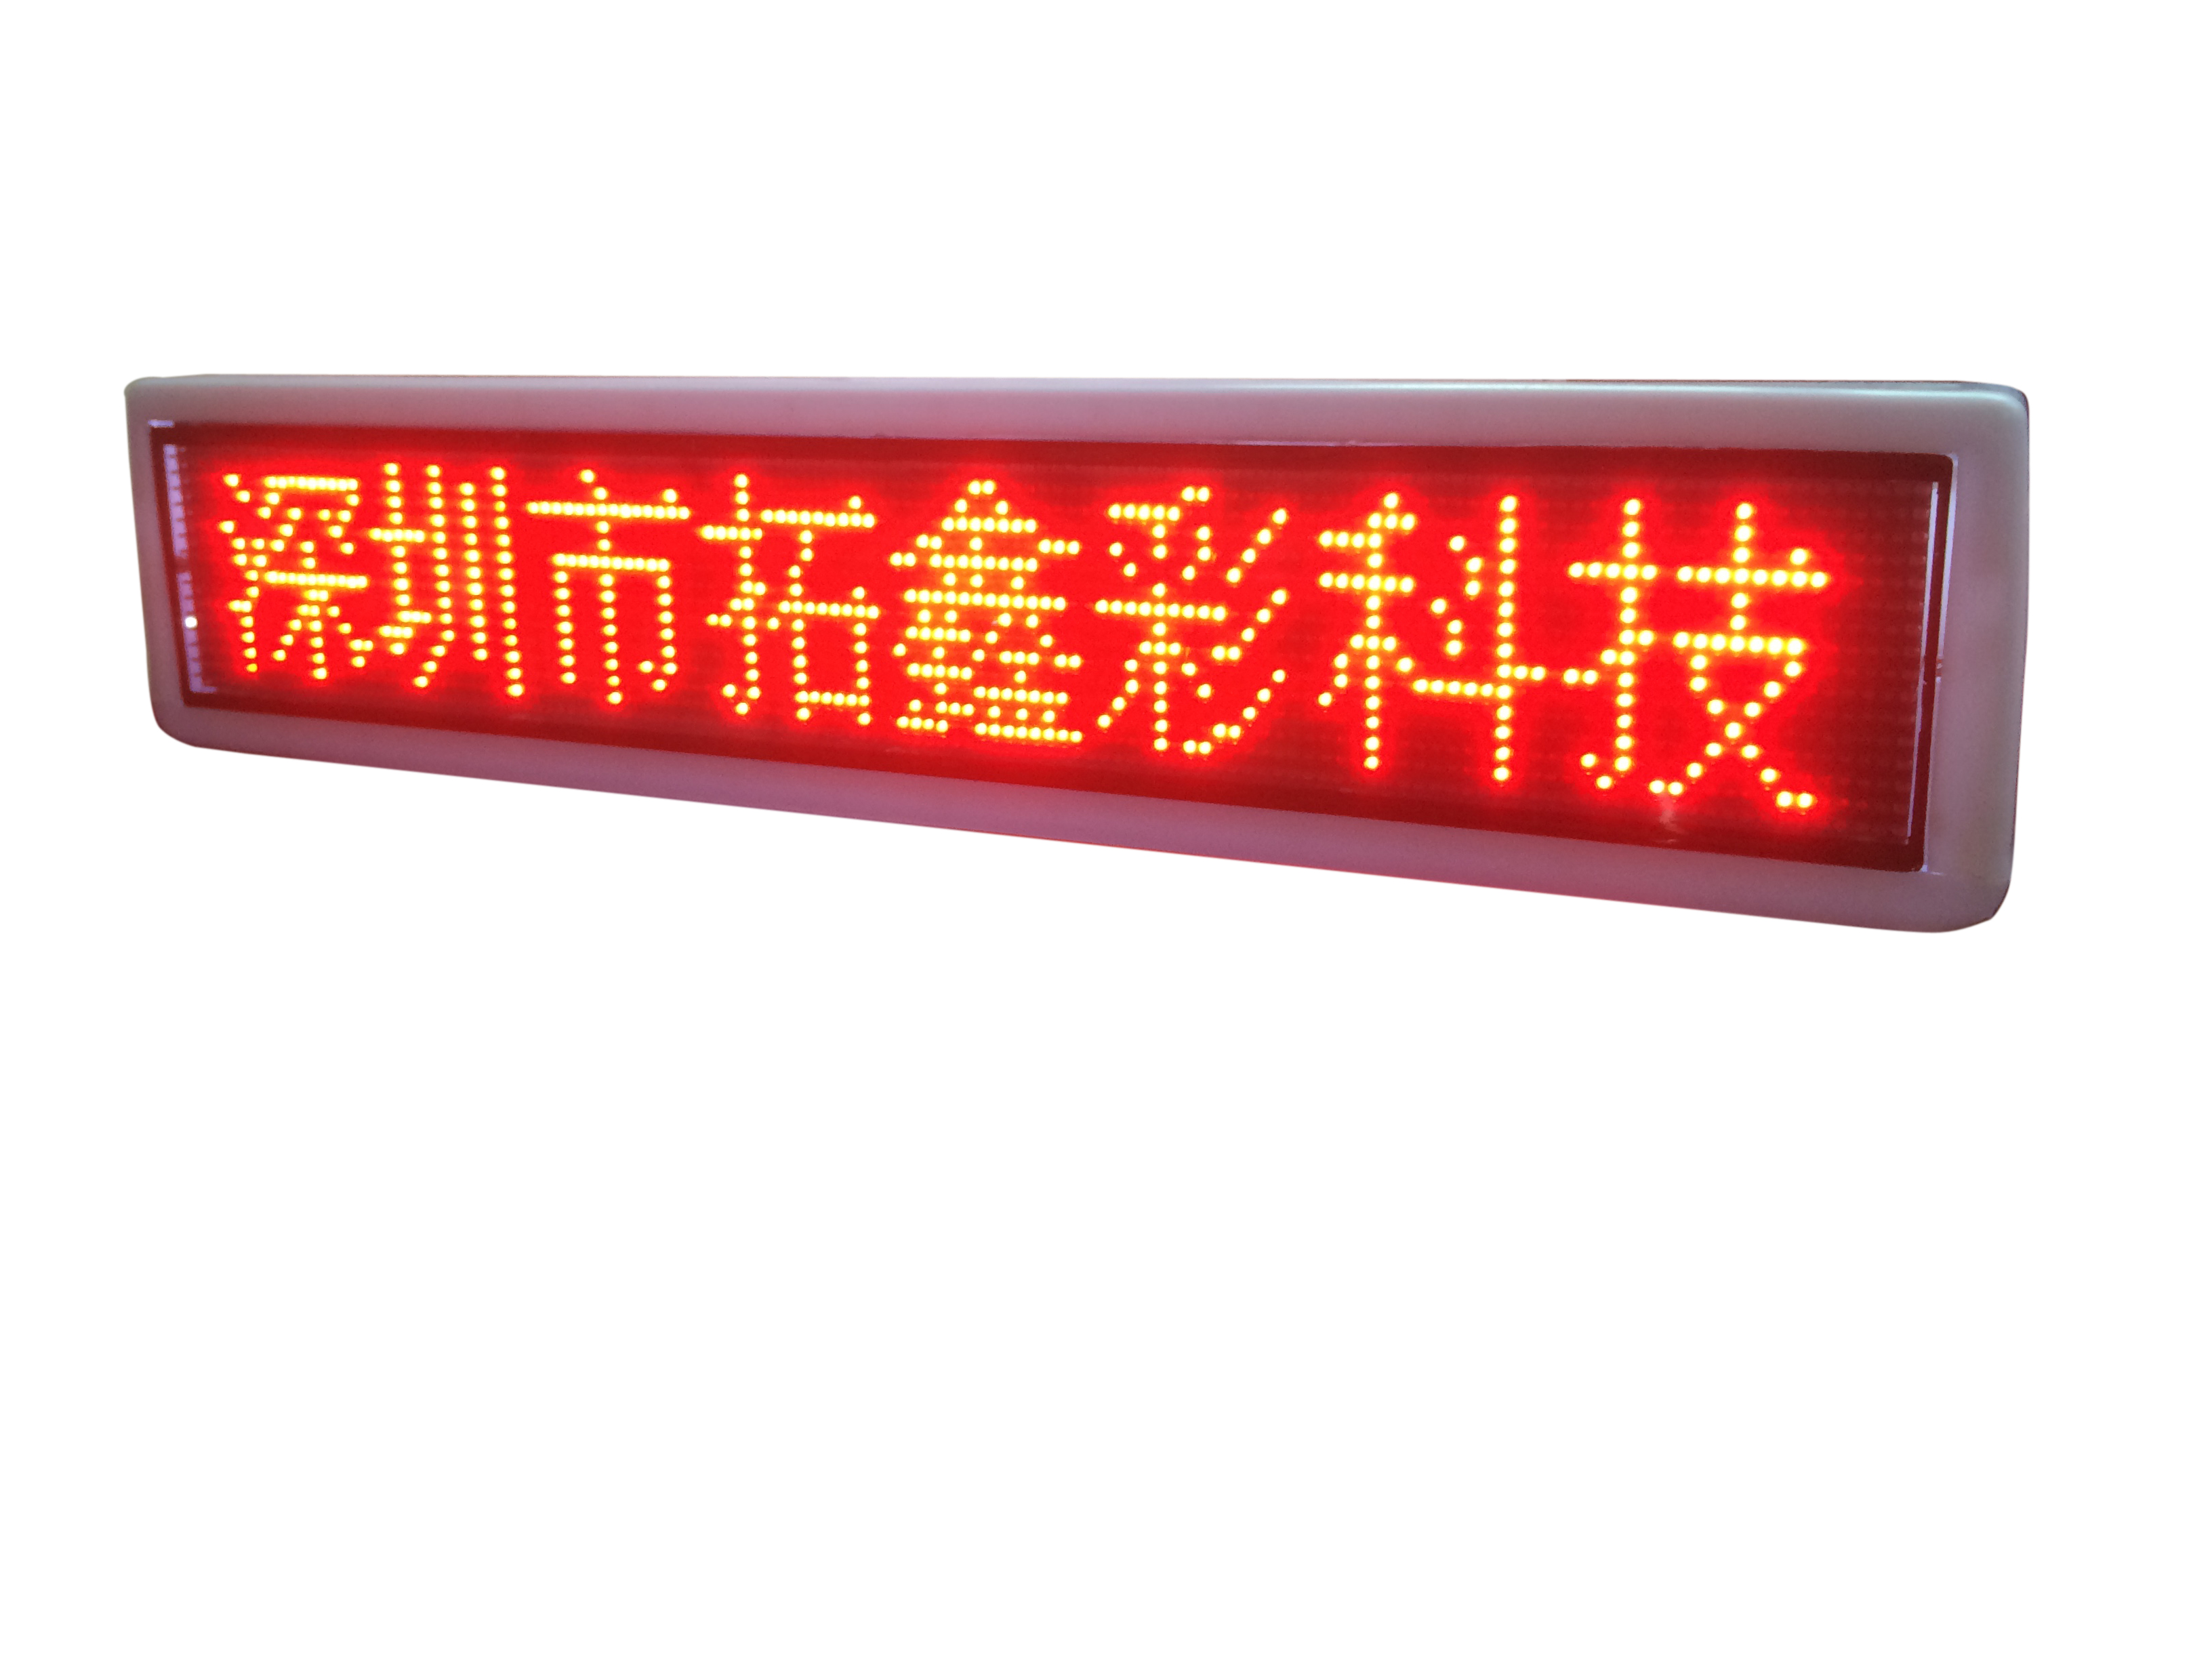 深圳市出租车LED顶灯广告屏厂家供应出租车LED顶灯广告屏